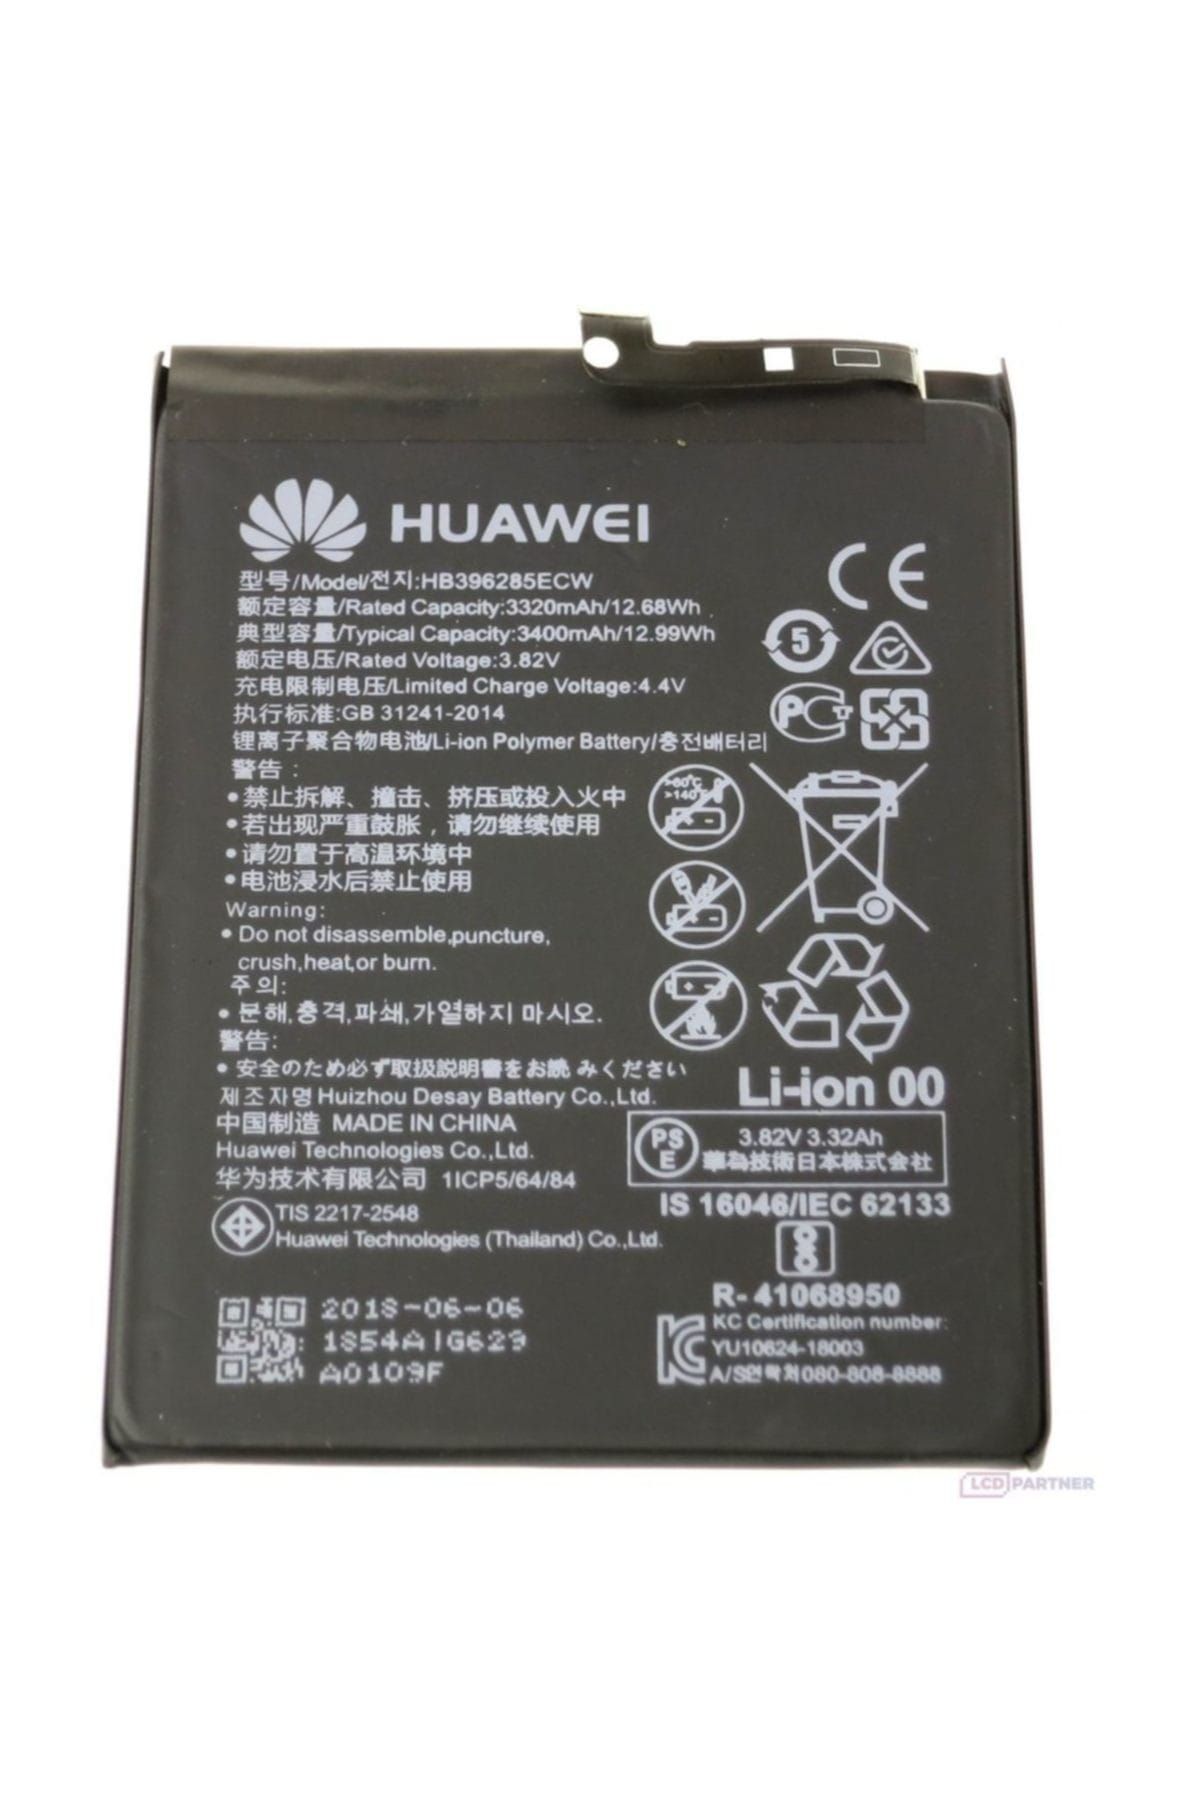 Huawei P20 / P20 Pro Hb396285ecw Batarya Pil Ve Tamir Seti